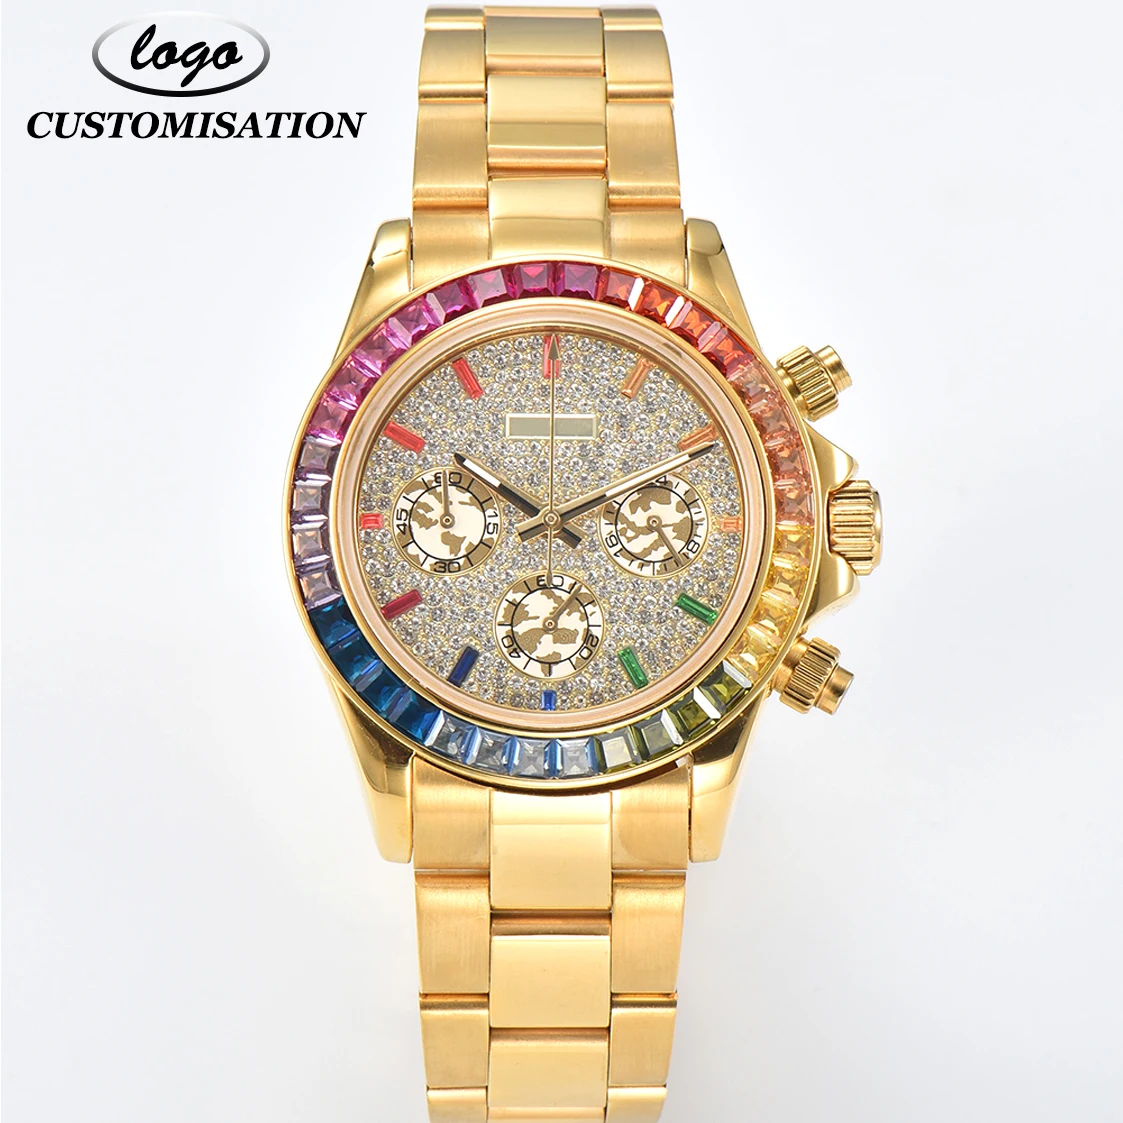 

Мужские часы VK63 с индивидуальным логотипом 39 мм, спортивный многофункциональный хронограф, цветной бриллиантовый Безель, золотой браслет из нержавеющей стали